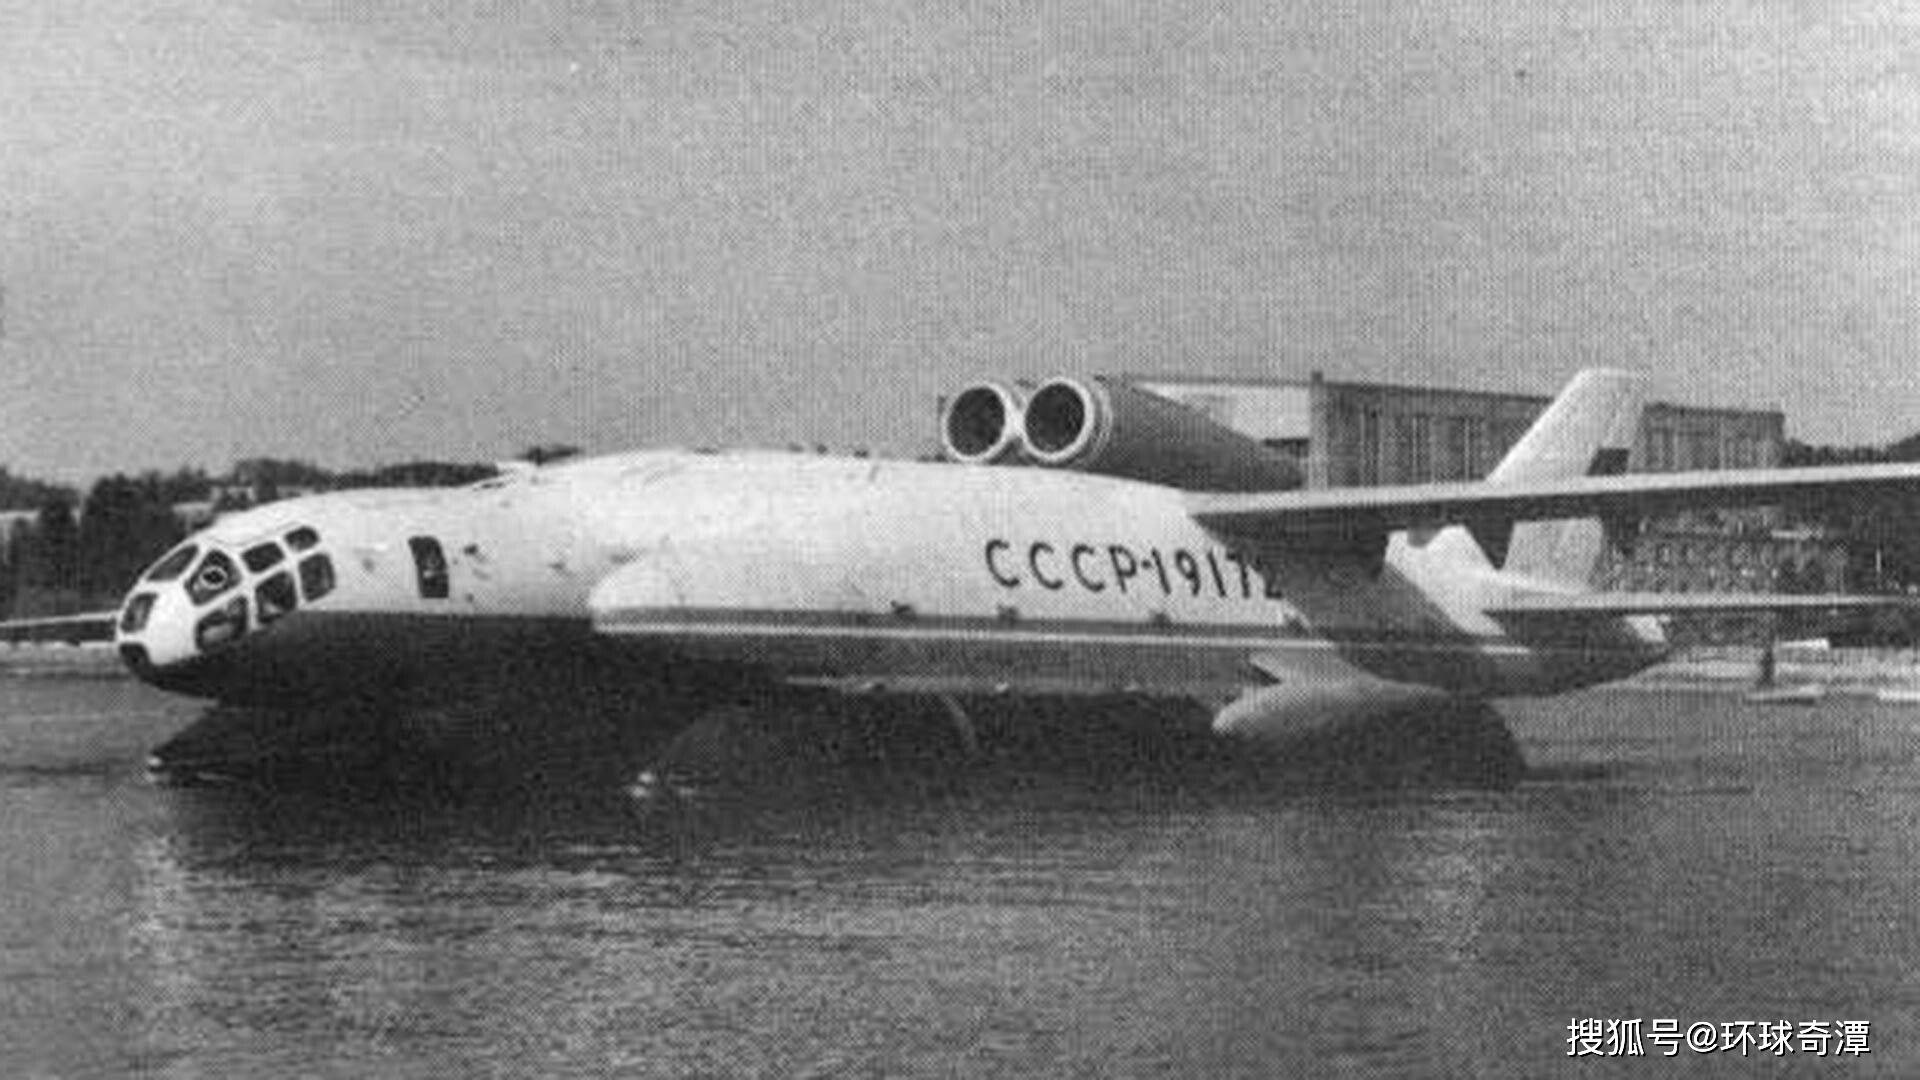 苏联援华志愿航空队的机身涂装是什么样子的？跟苏军使用的飞机涂装一样么？ - 知乎